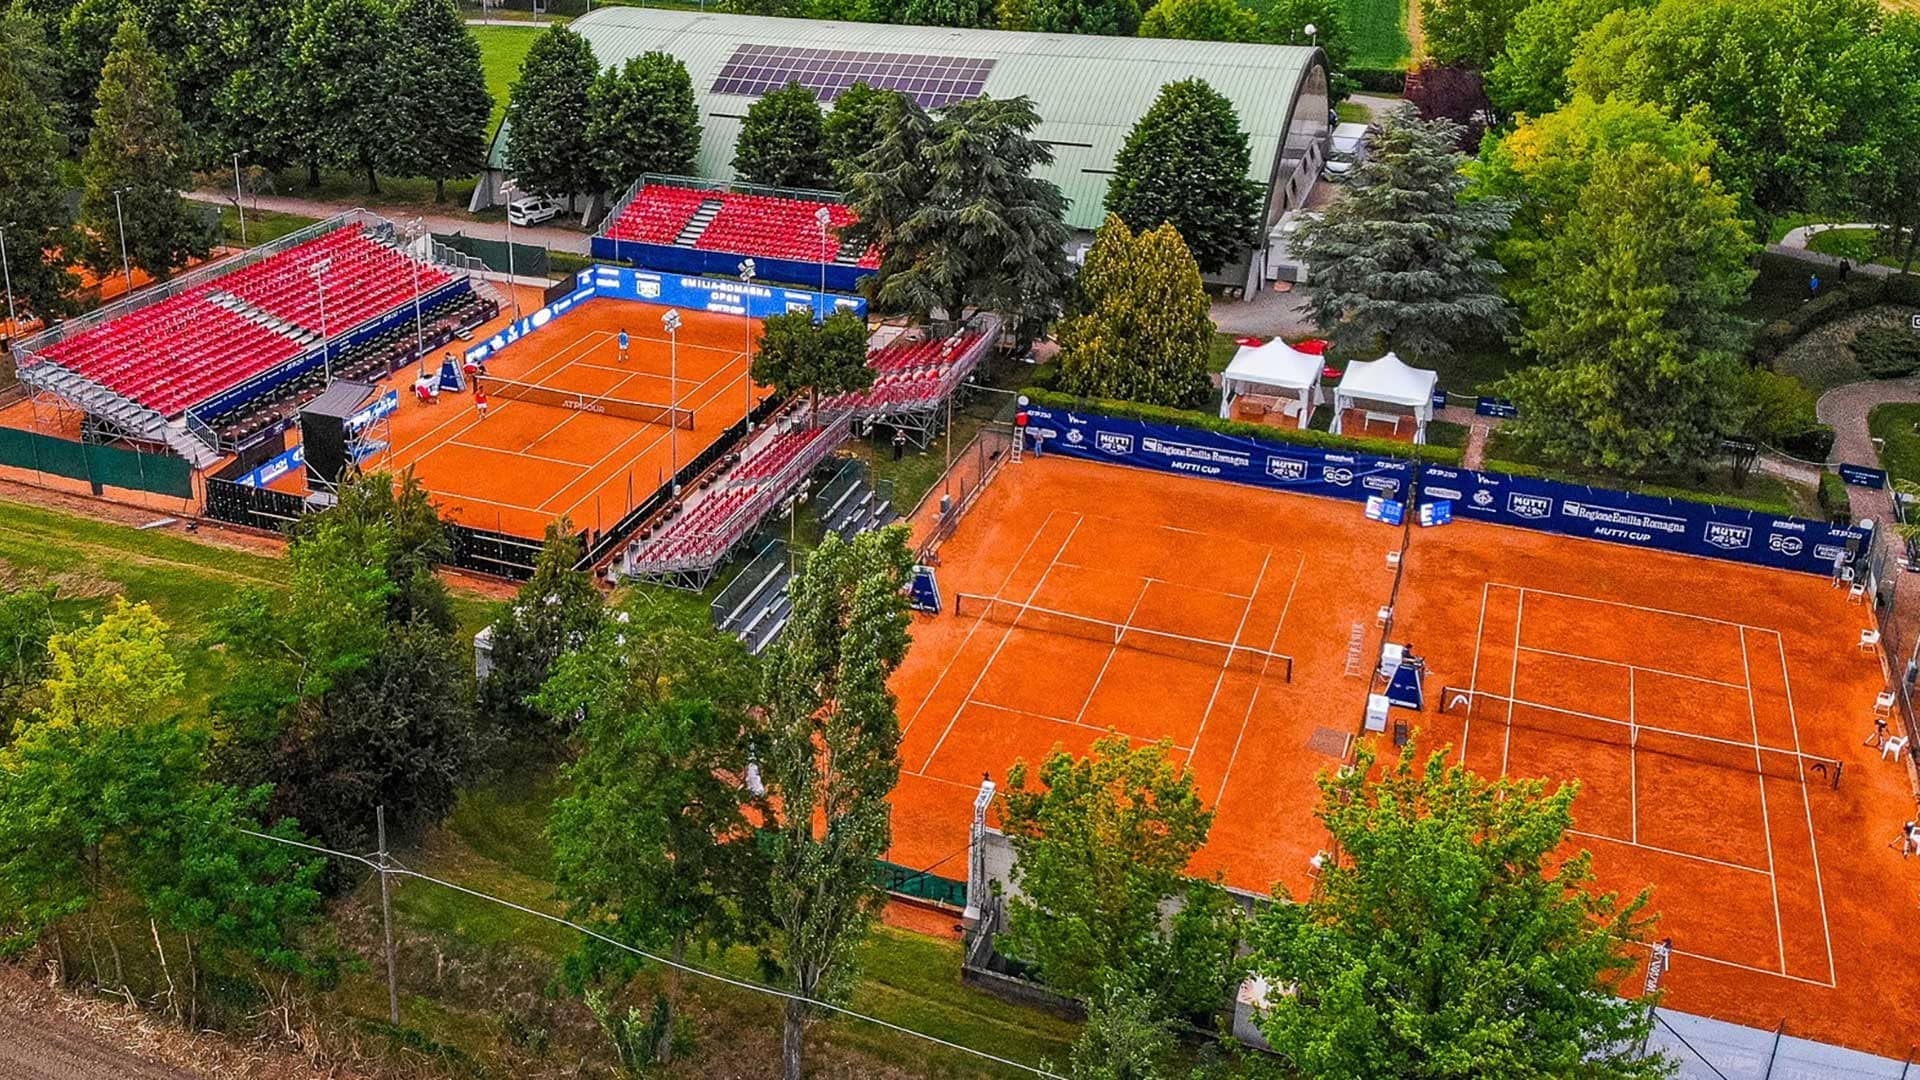 Emilia-Romagna Tennis Cup